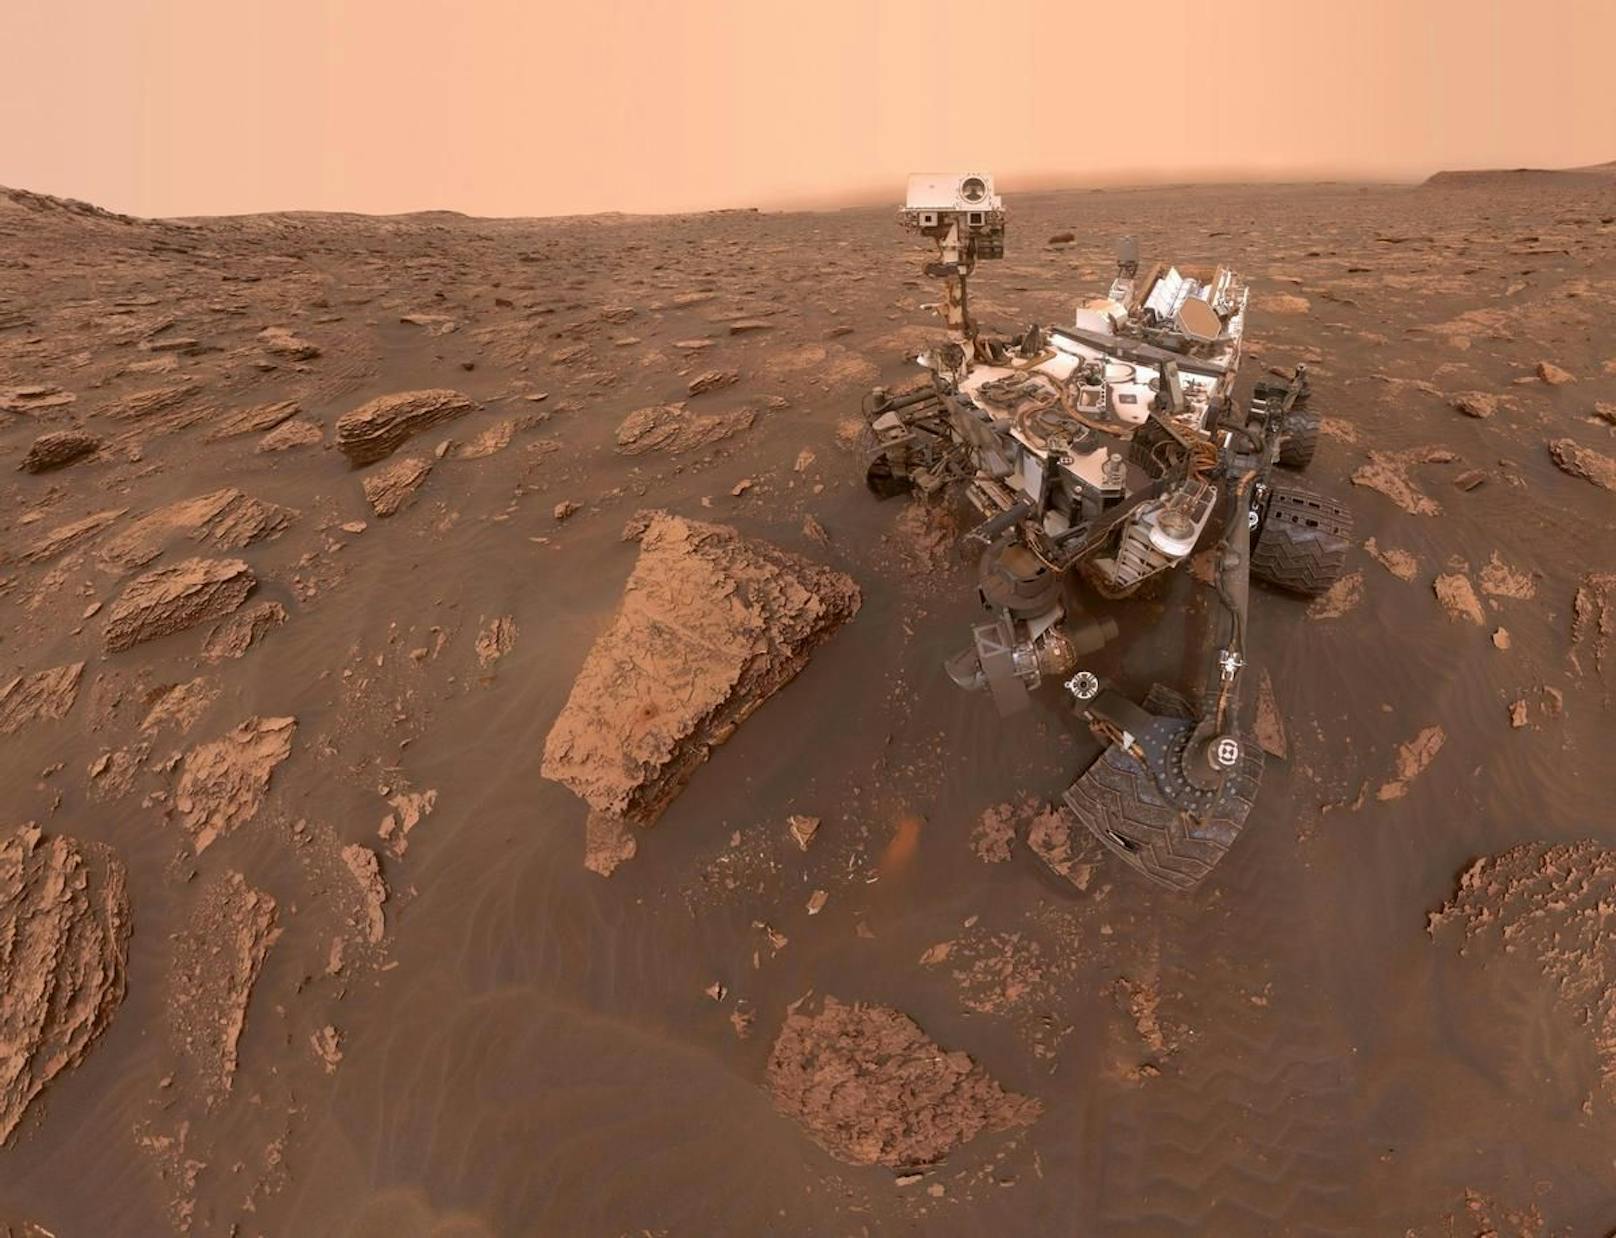 Bereits die Schwestersonde Curiosity hatte ein kleines Extra-Feature eingebaut: Ihre Reifen hinterließen Morse-Code im Sand des Planeten.